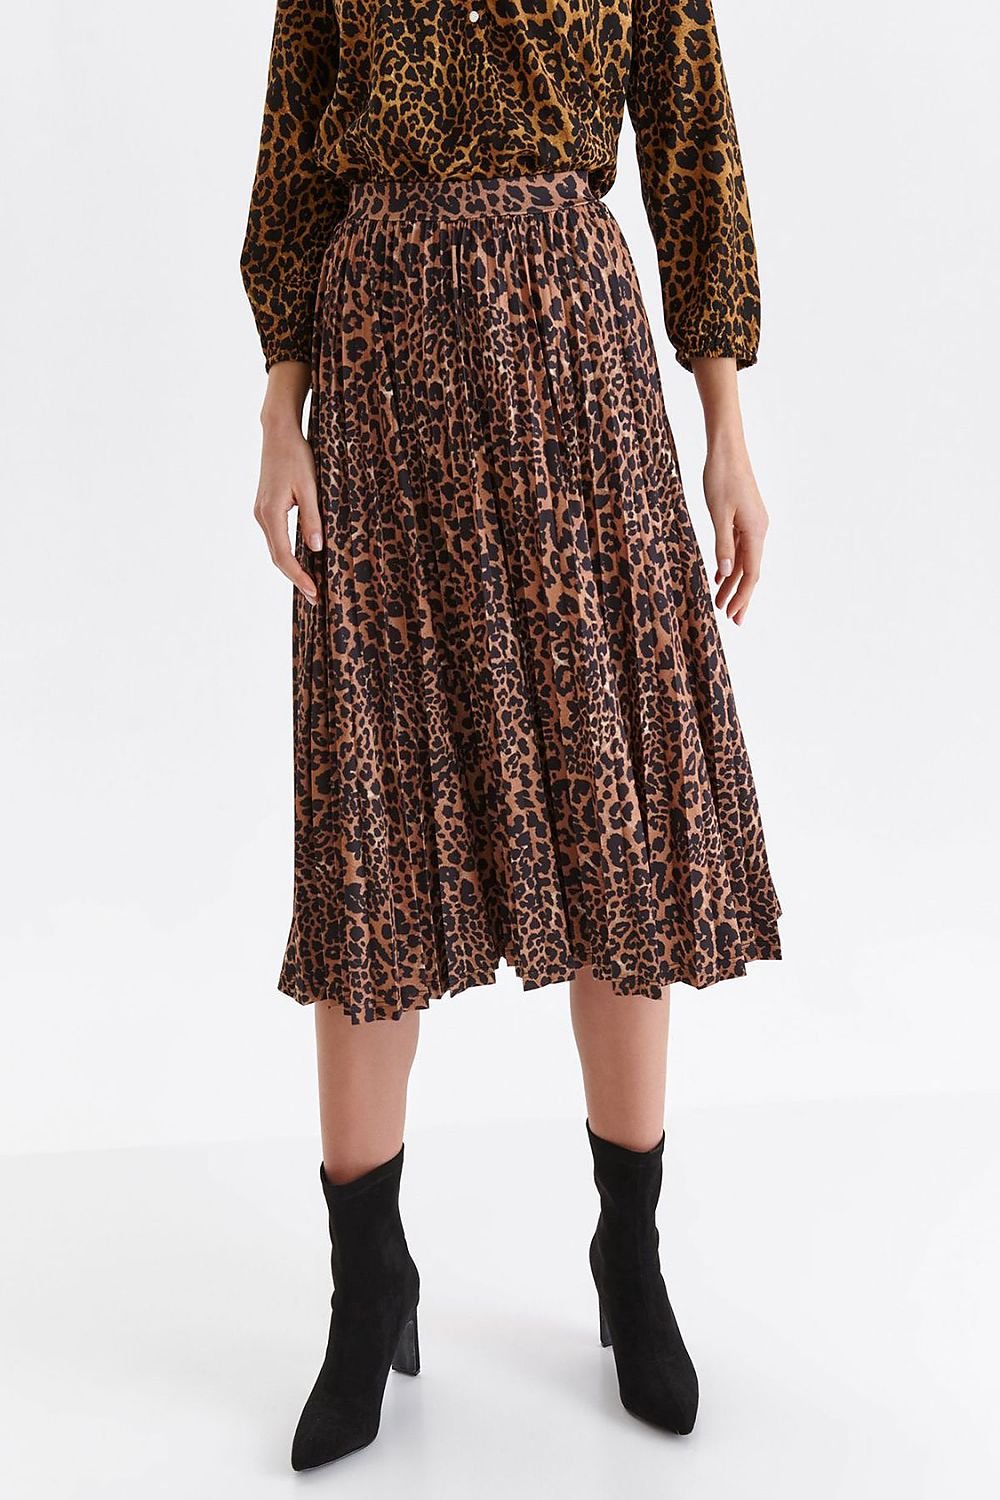 Jupe midi plissée à motif léopard pour un look tendance et audacieux, parfaite pour une garde-robe moderne.